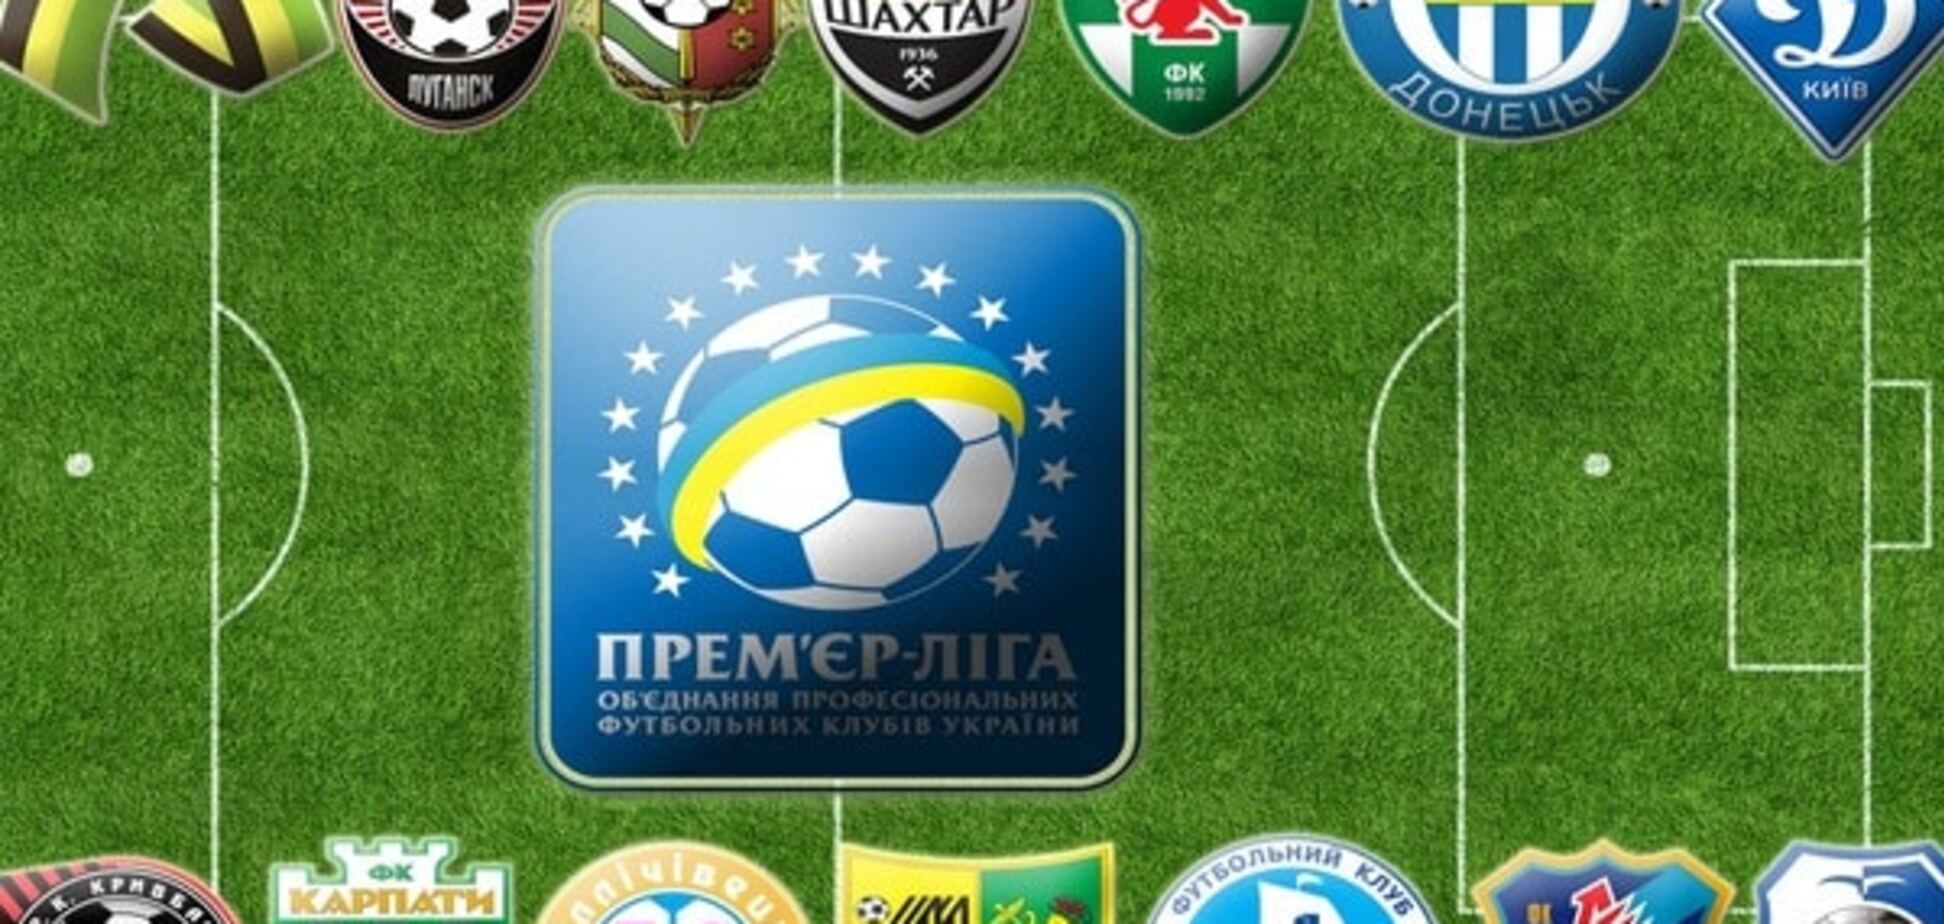 Блохин предложил необычный формат чемпионата Украины 